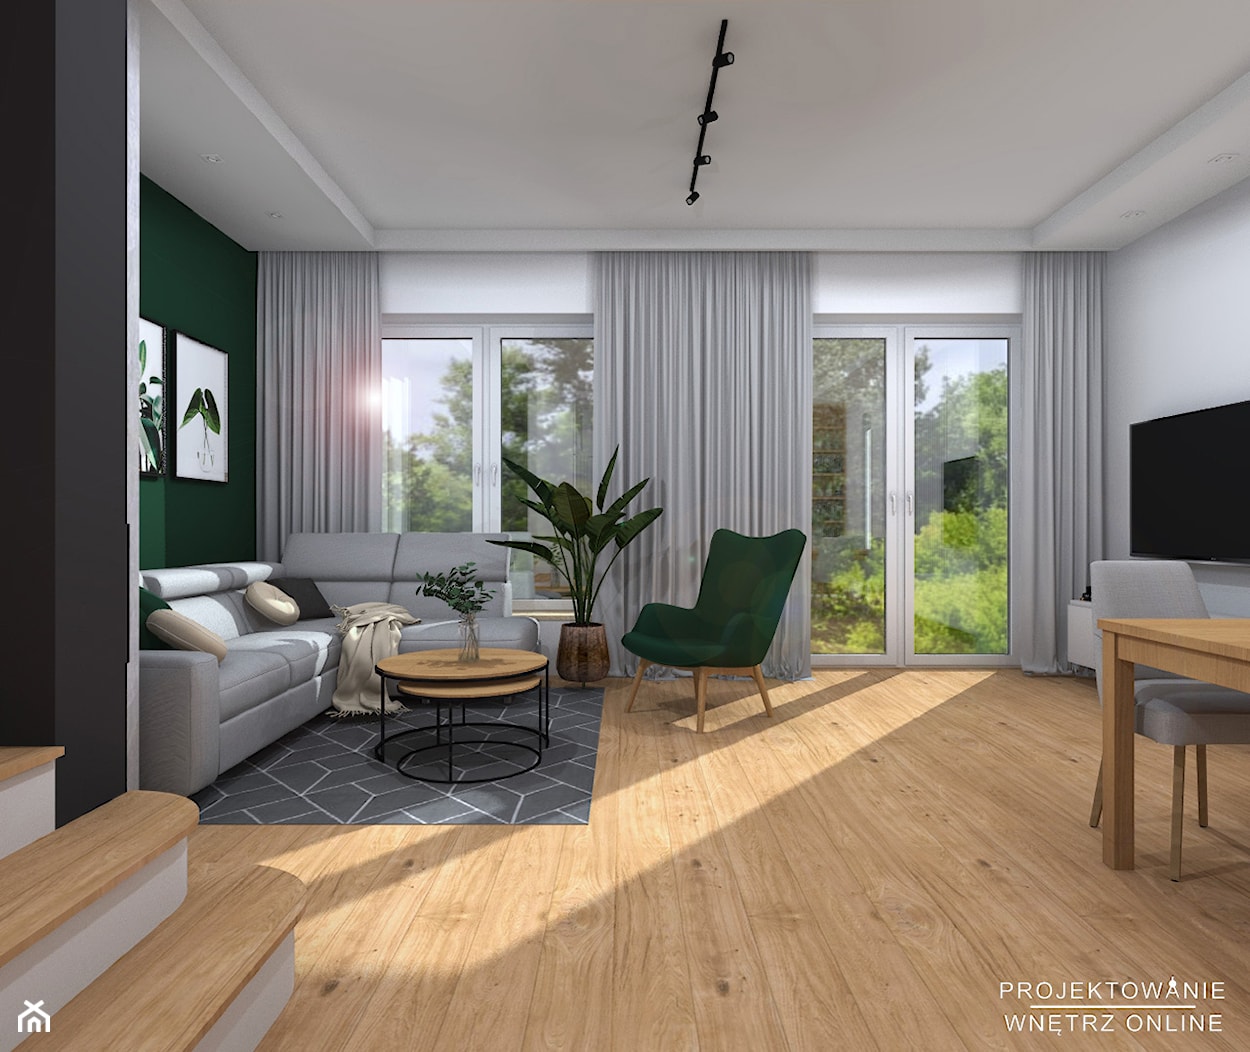 Projekt domu styl skandynawski - zdjęcie od Projektowanie Wnetrz Online - Homebook